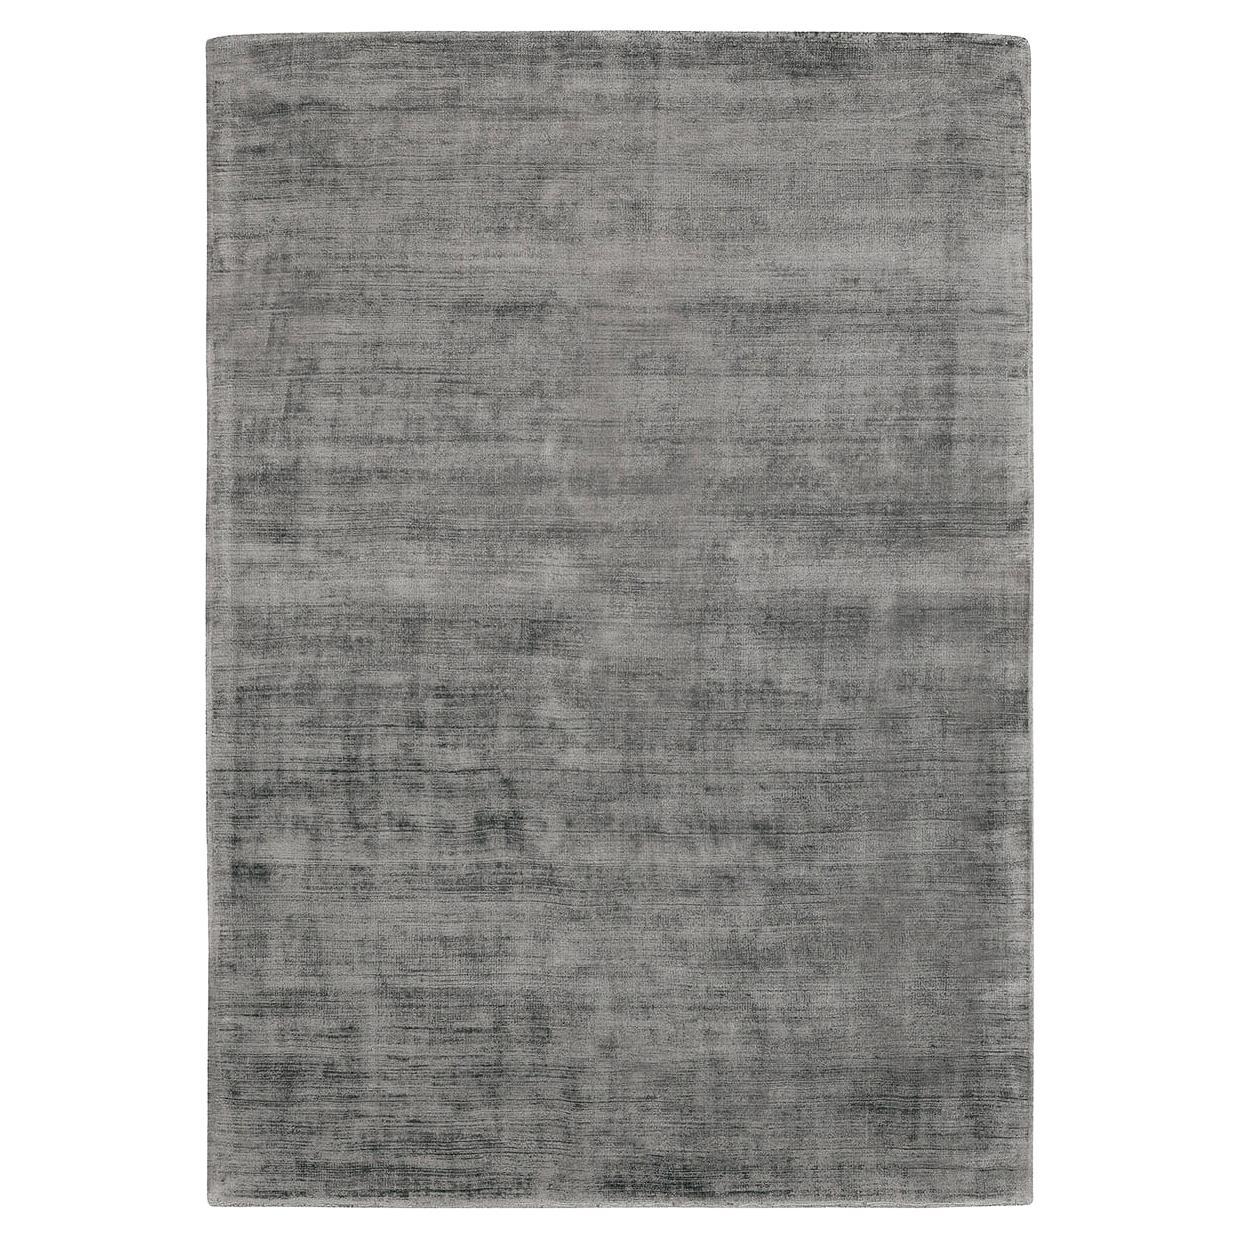 Trendiger glänzender grauer Teppich